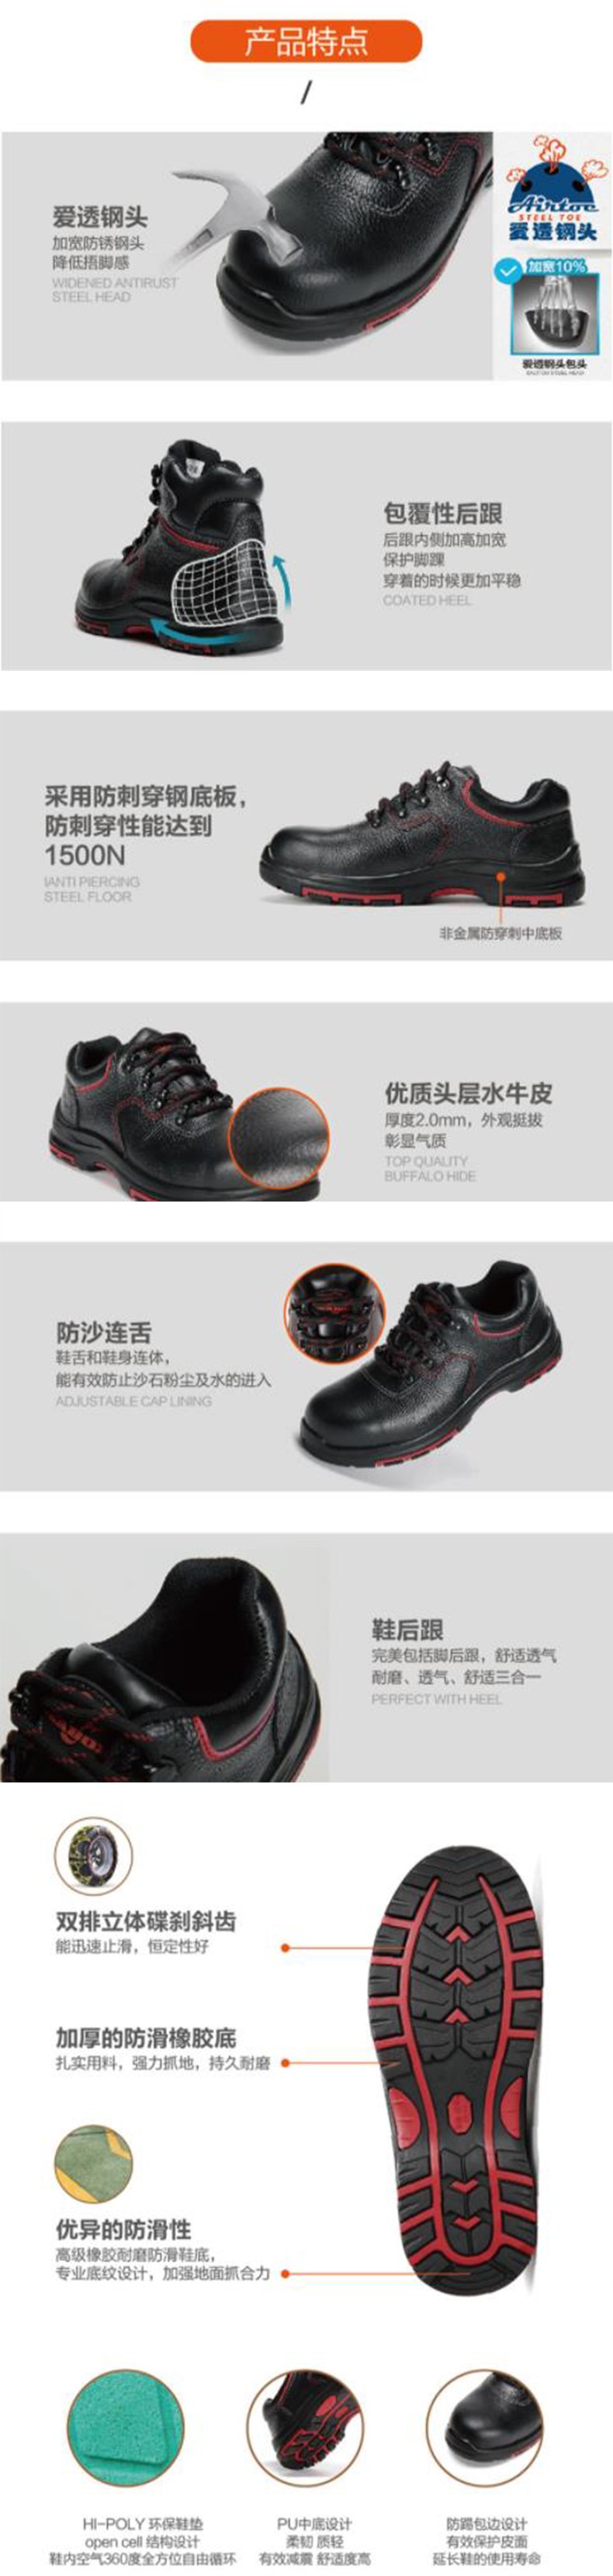 华信吉豹X7118AG低帮防穿刺安全鞋图片3